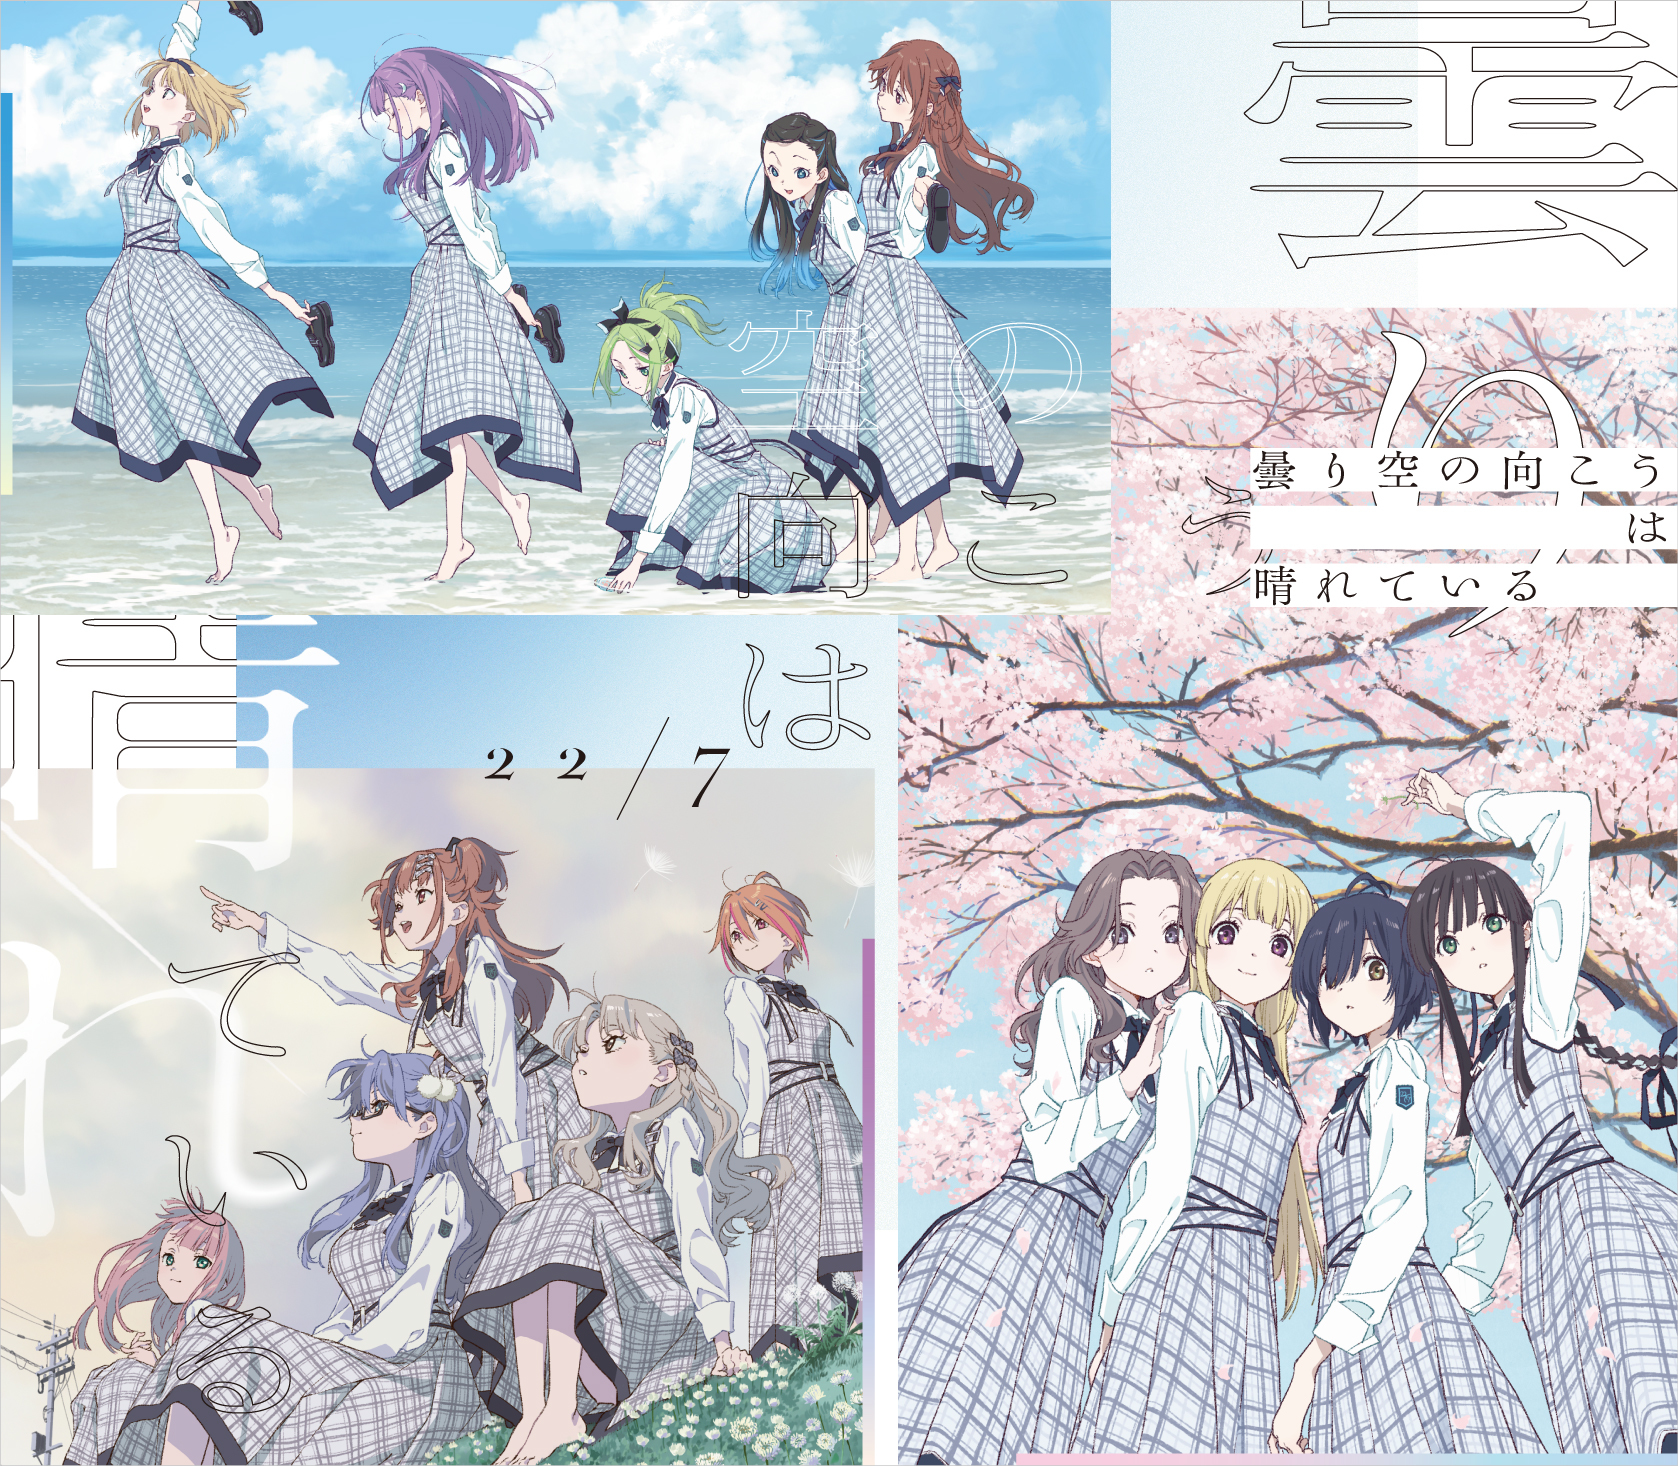 22/7 Kumorizora no Mukou ha Hareteiru (曇り空の向こうは晴れている) cover artwork